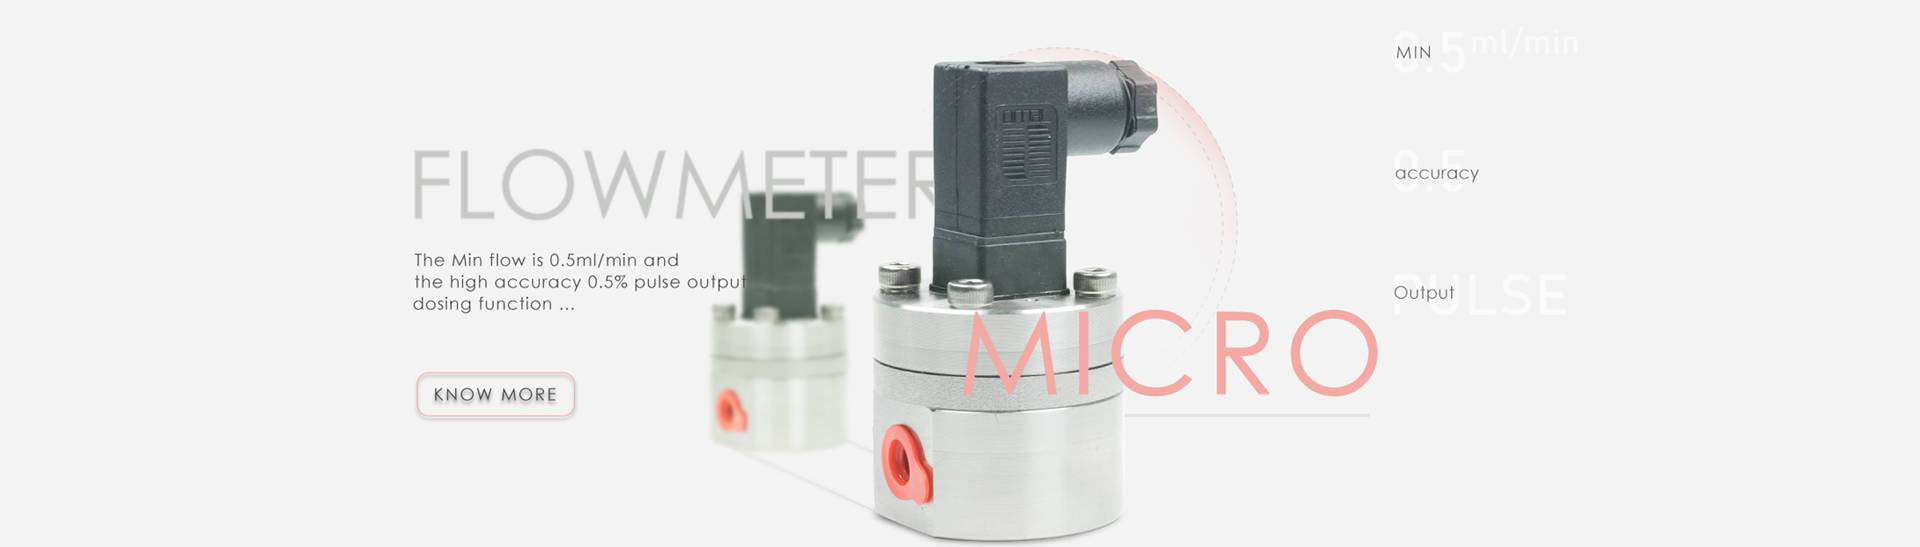 micro-flow-meter